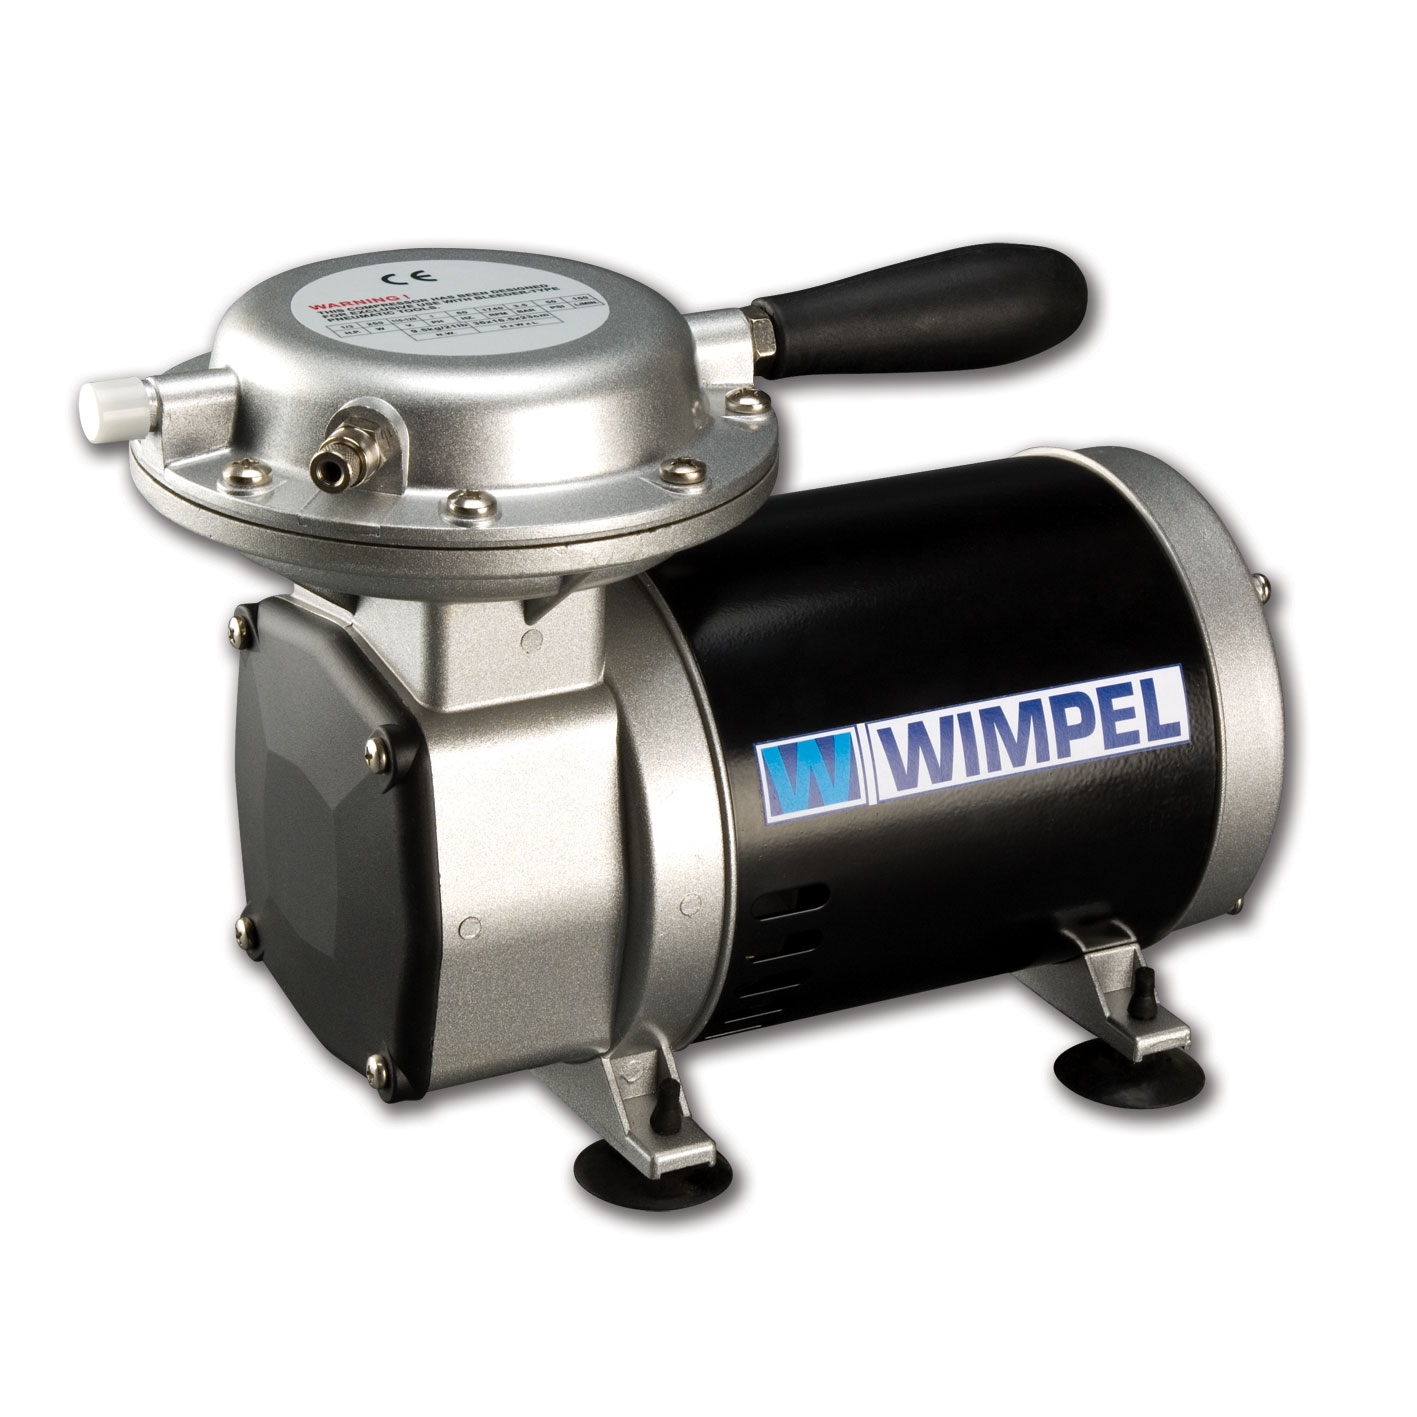 Compressor Wimpel Comp2 para Pistolas e Aerógrafos-Bivolt - melhor Tufãozinho do mercado - Promoções